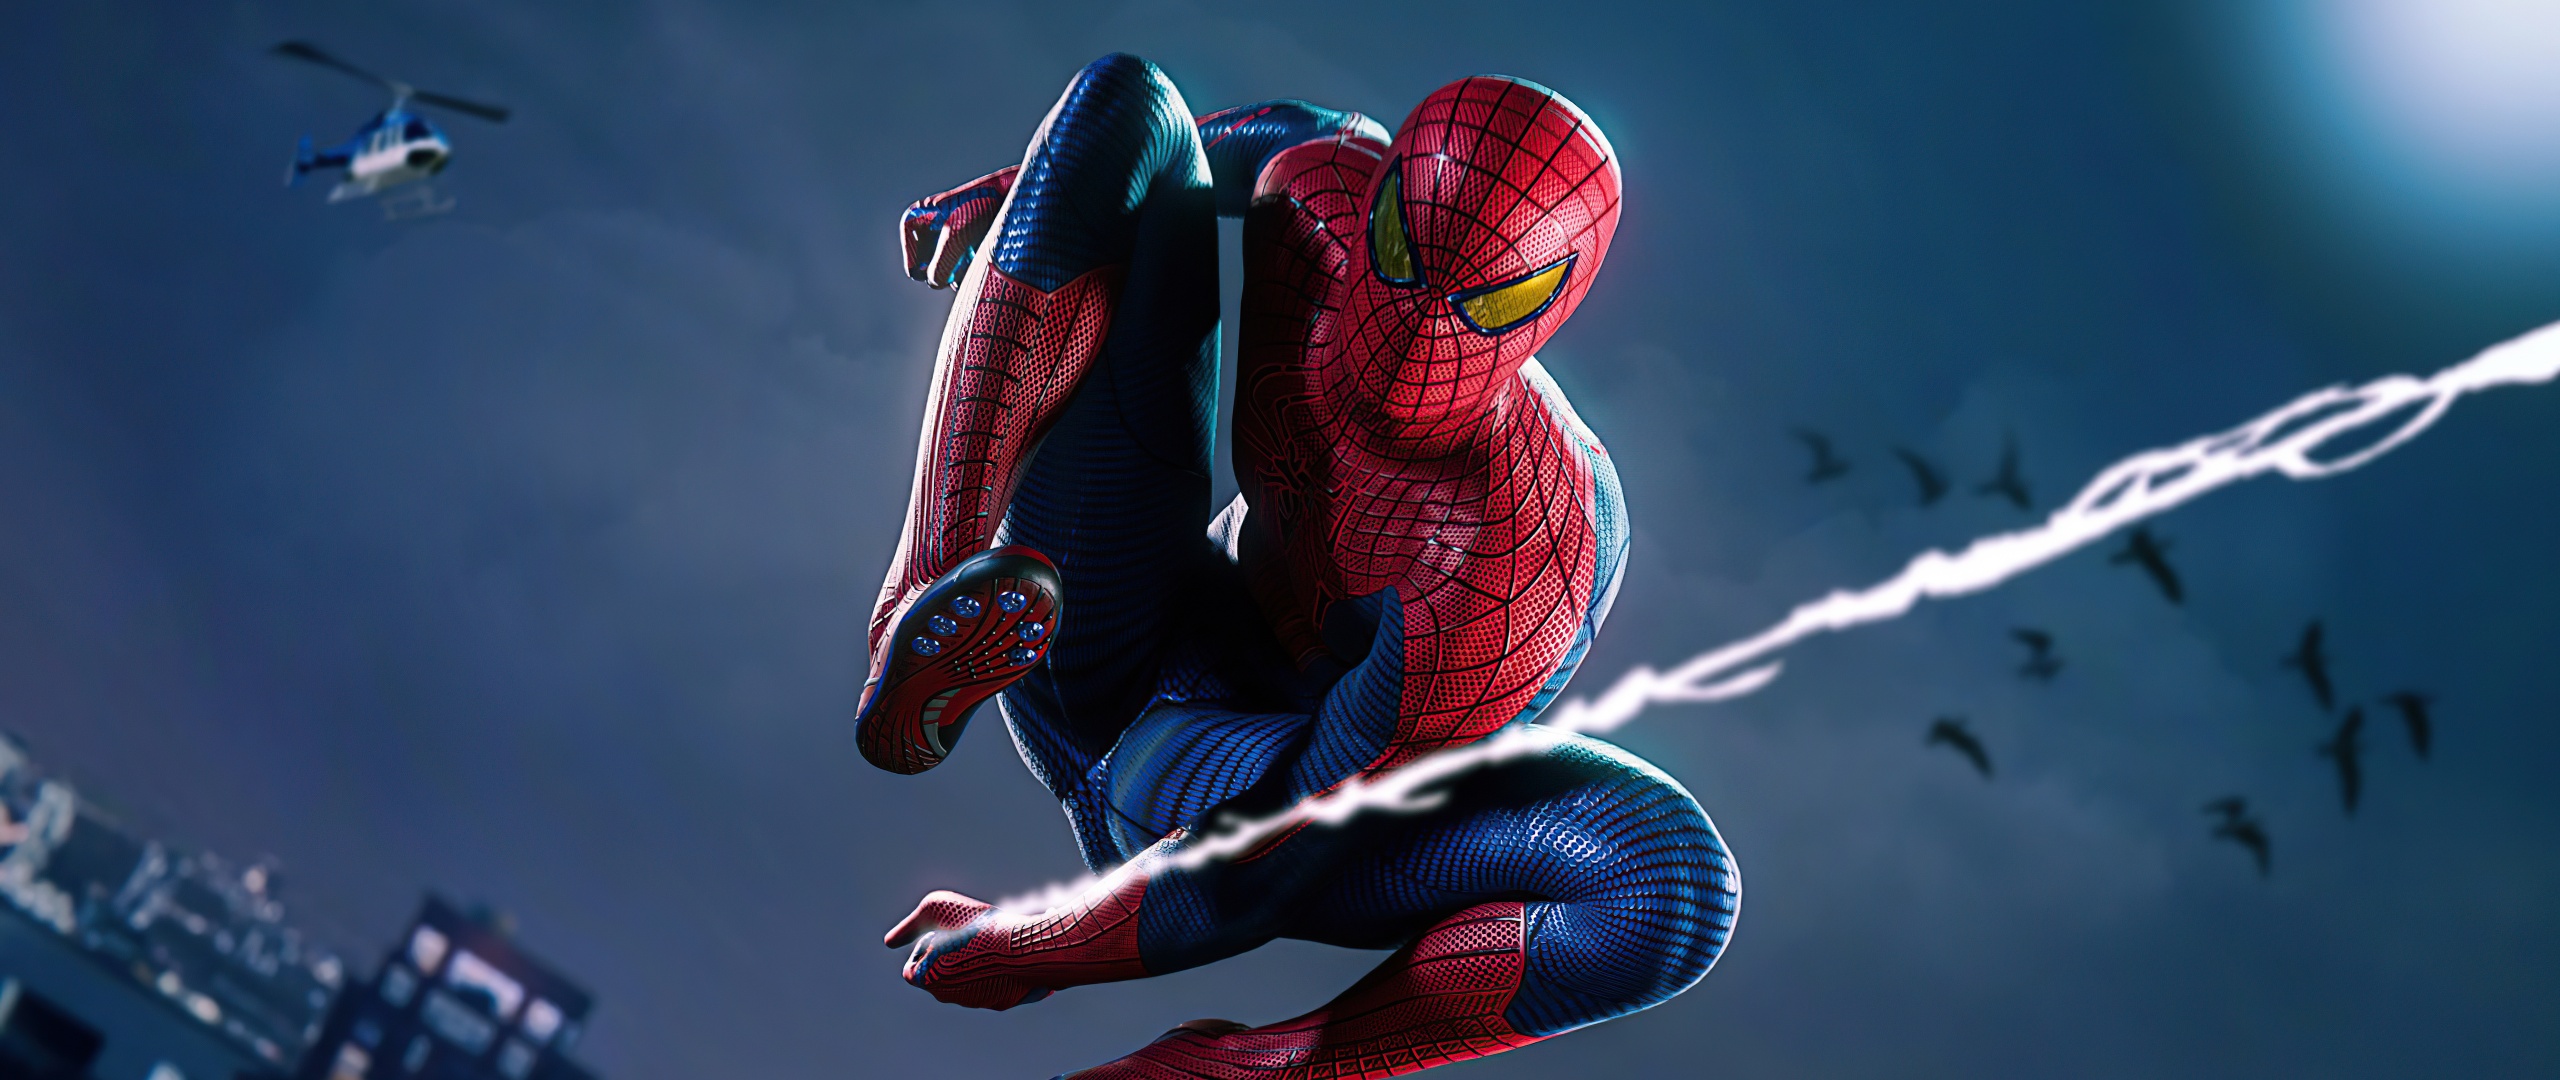 Fan hâm mộ của Người Nhện chắc chắn sẽ thích mê bộ sưu tập những hình nền đẹp về Spider-Man 4K này. Từ những hình ảnh truyền cảm hứng đến những bức hình độc đáo về các nhân vật, tất cả đều được thiết kế với chất lượng tuyệt vời để cho ra những bức ảnh đẹp nhất. Hãy tải ngay và sẵn sàng cho trận chiến chống tội phạm cùng Người Nhện. 